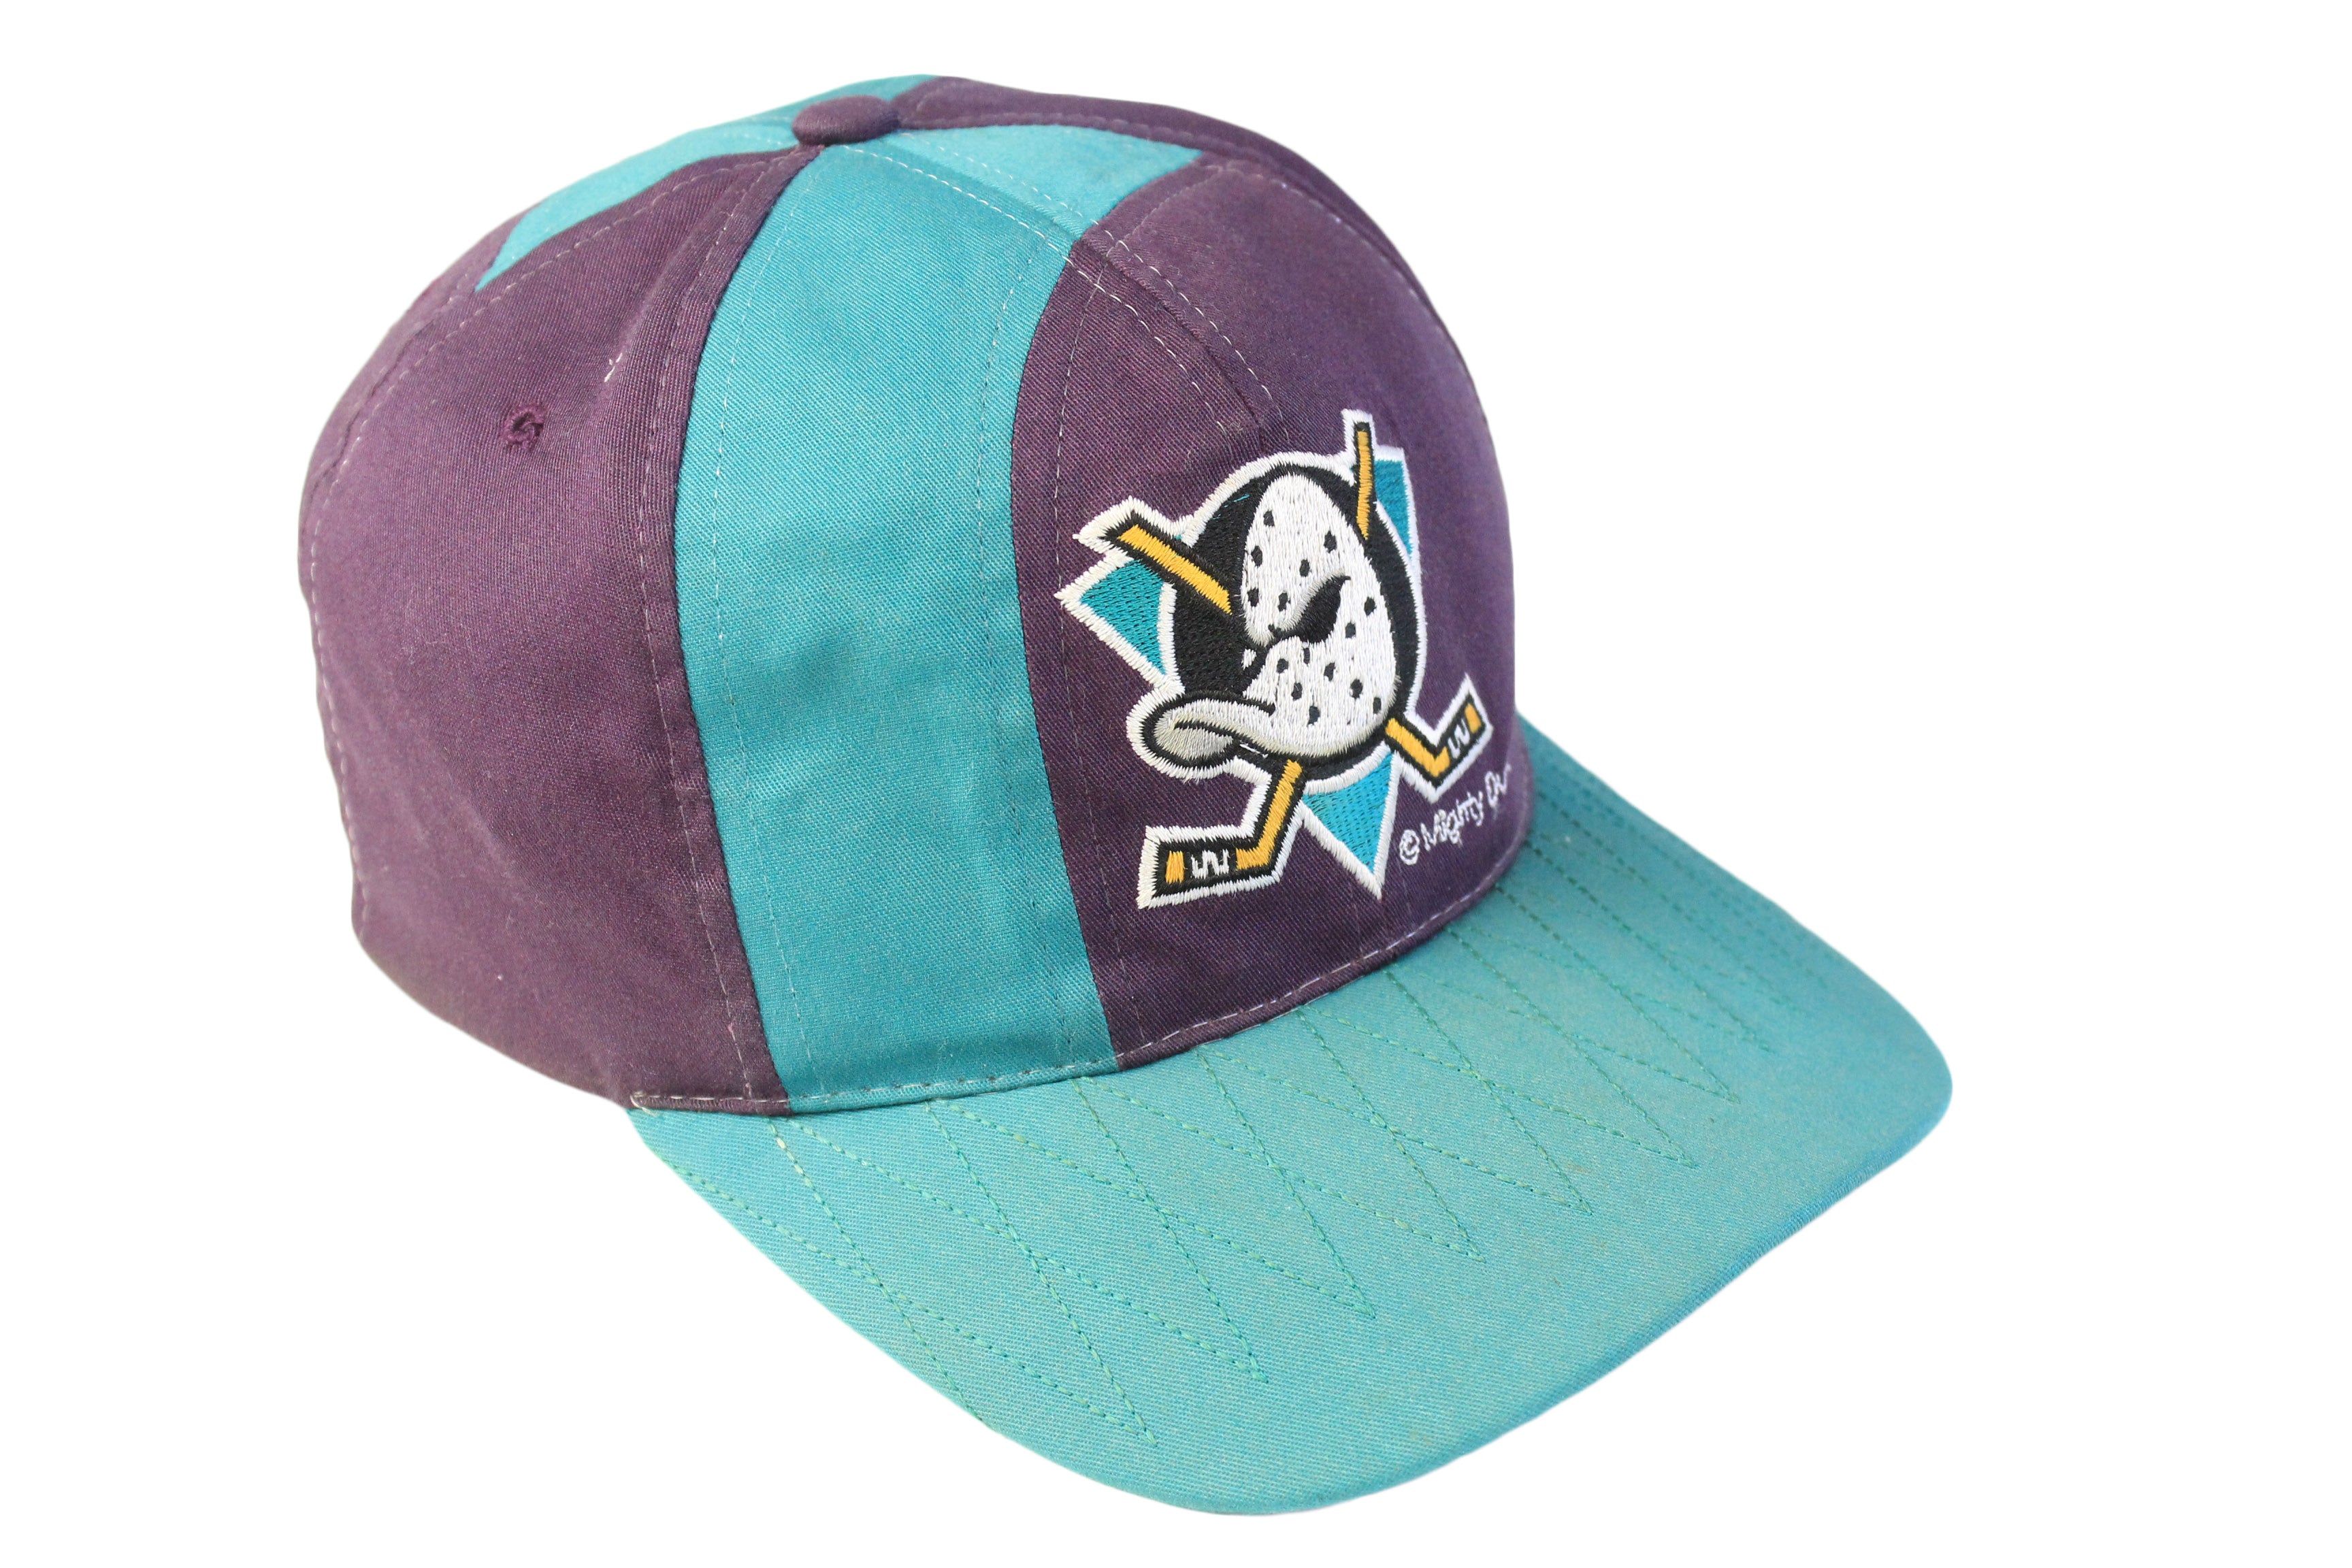 Anaheim Ducks Fitted Hat - Size 7